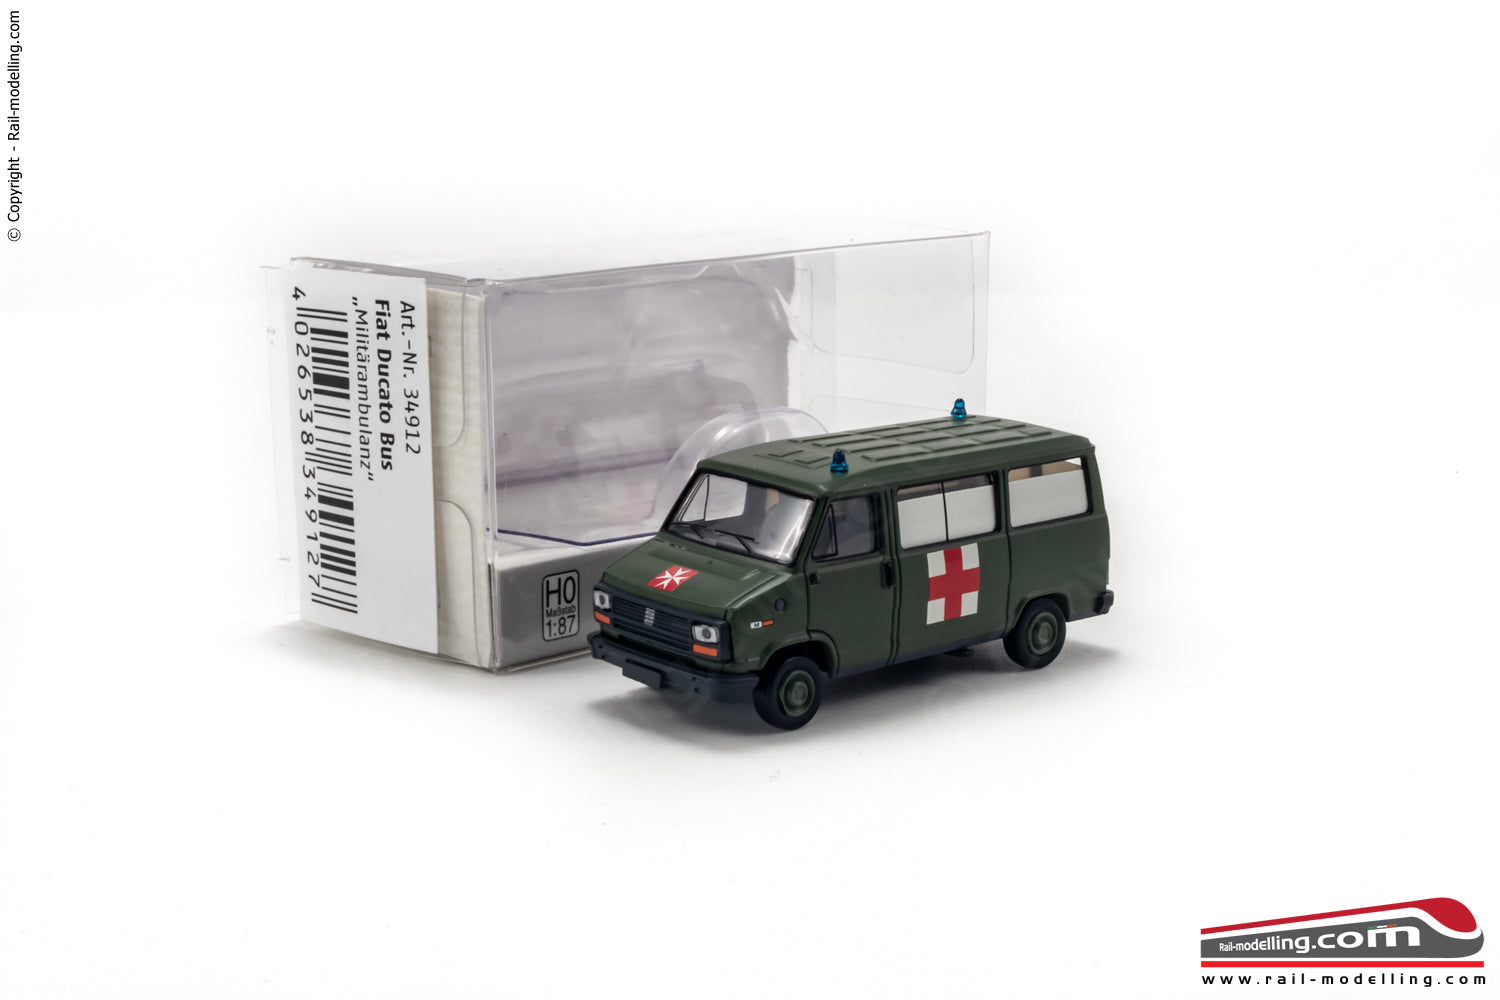 BREKINA 34912 - H0 1:87 - Auto modellino Fiat Ducato Ambulanza Militare